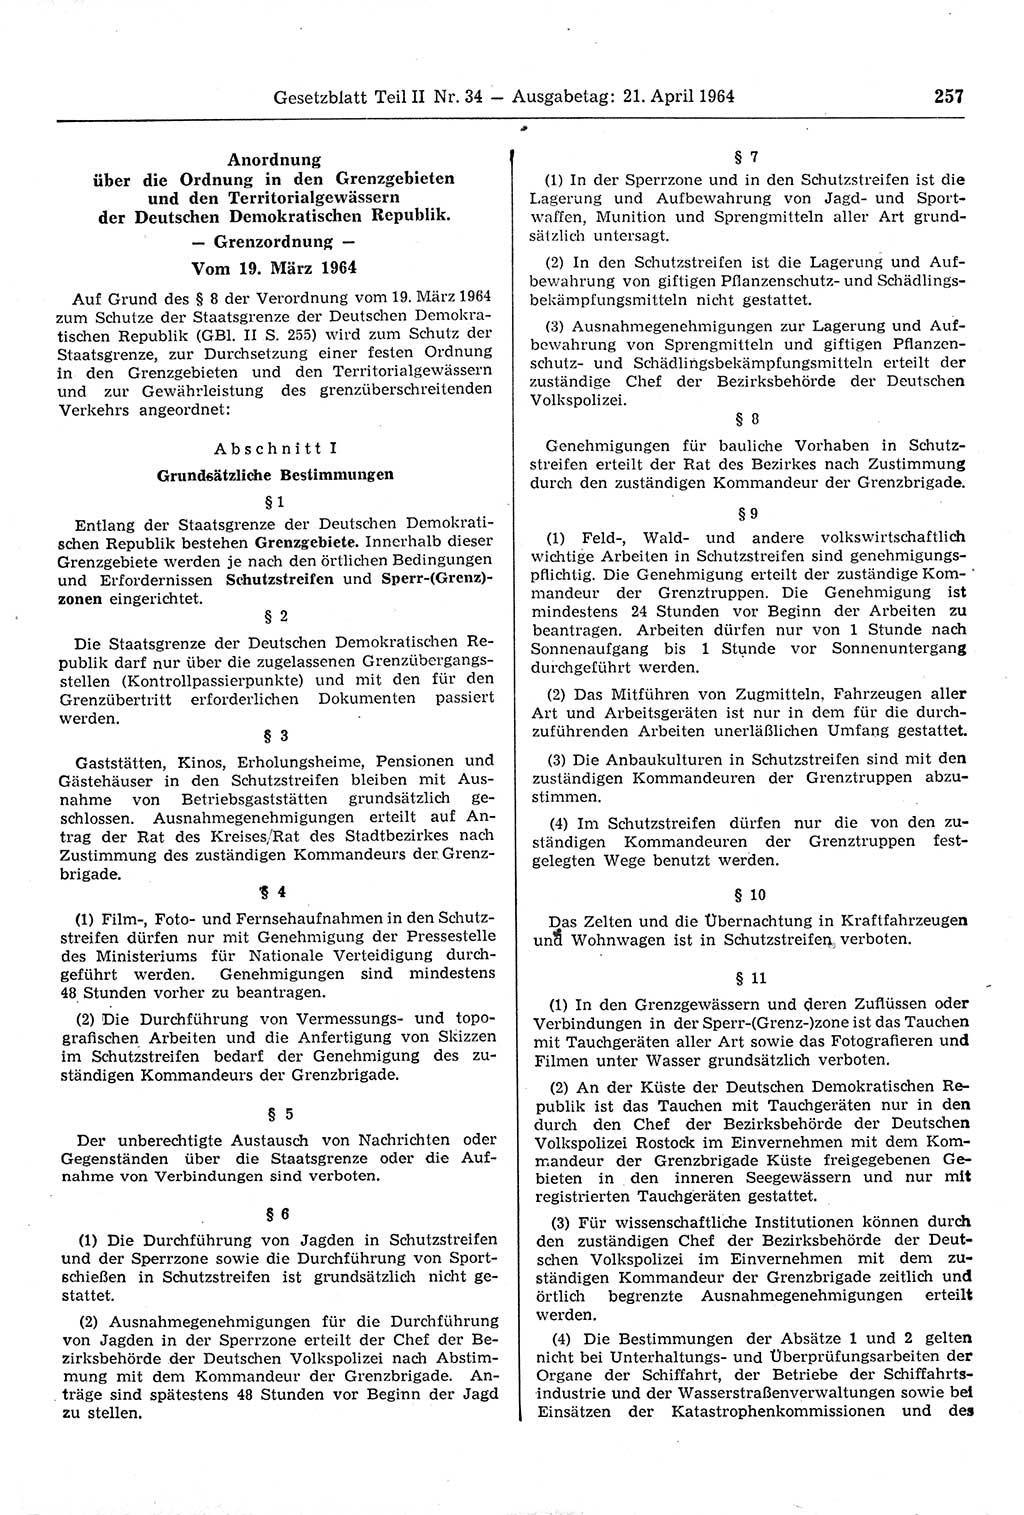 Gesetzblatt (GBl.) der Deutschen Demokratischen Republik (DDR) Teil ⅠⅠ 1964, Seite 257 (GBl. DDR ⅠⅠ 1964, S. 257)